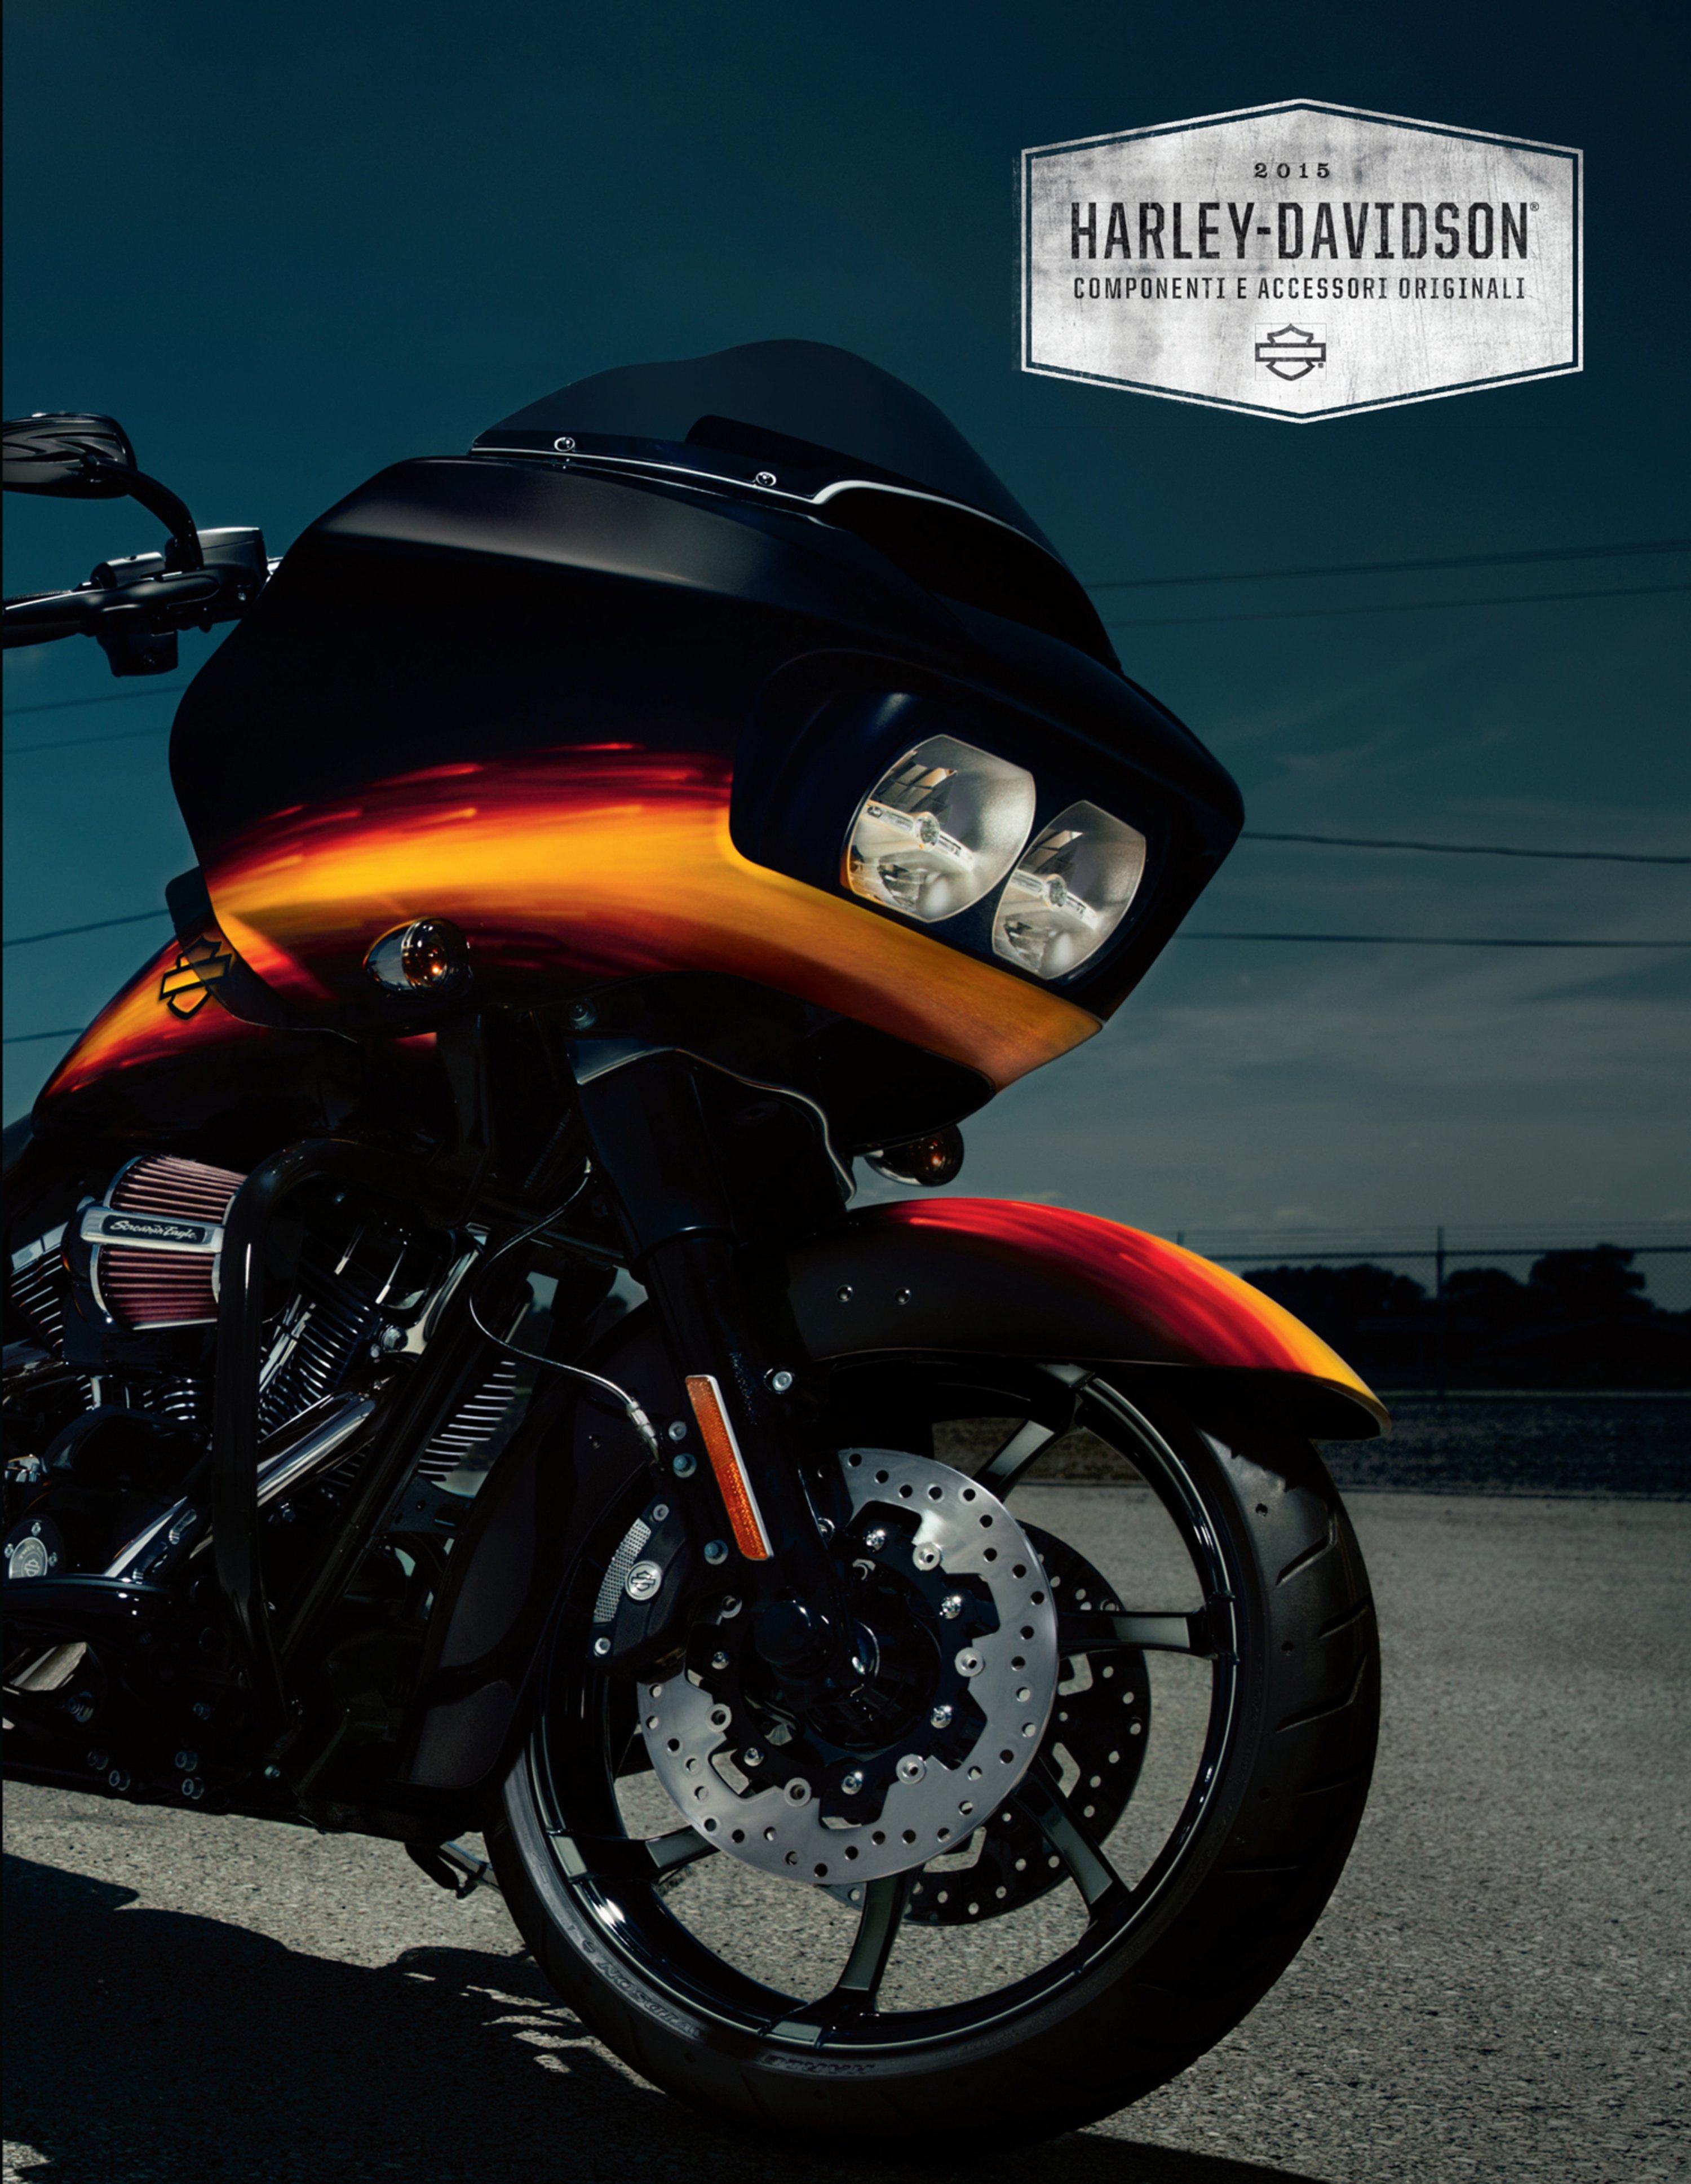 Harley-Davidson. Catalogo Componenti e Accessori originali 2015